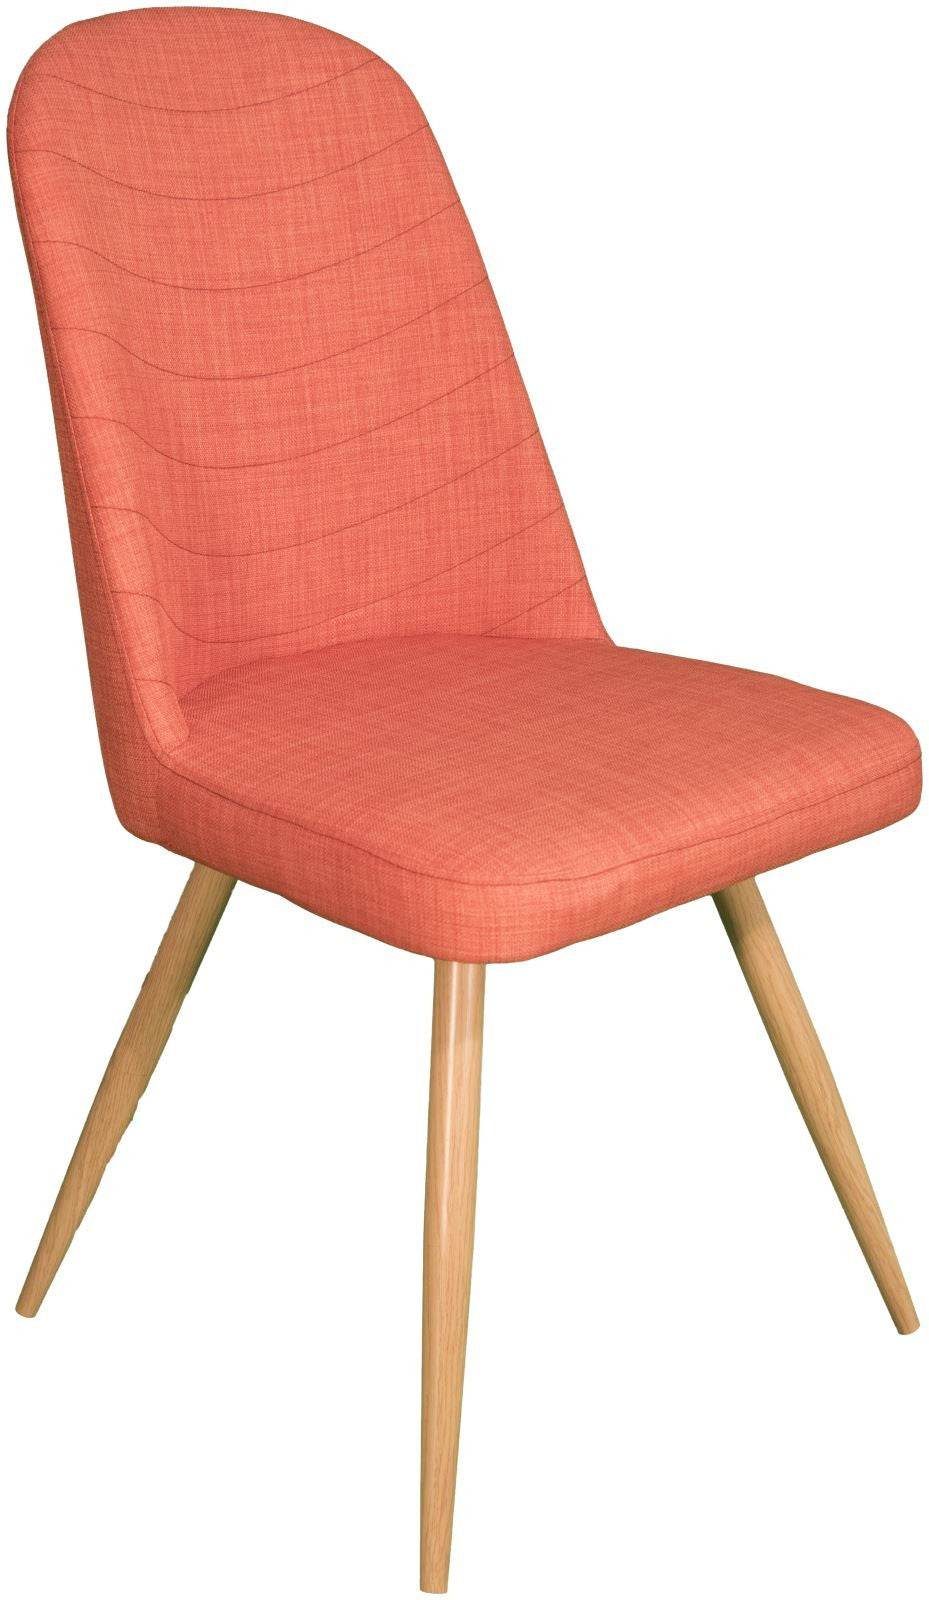 Sweden Orange Dining Chair